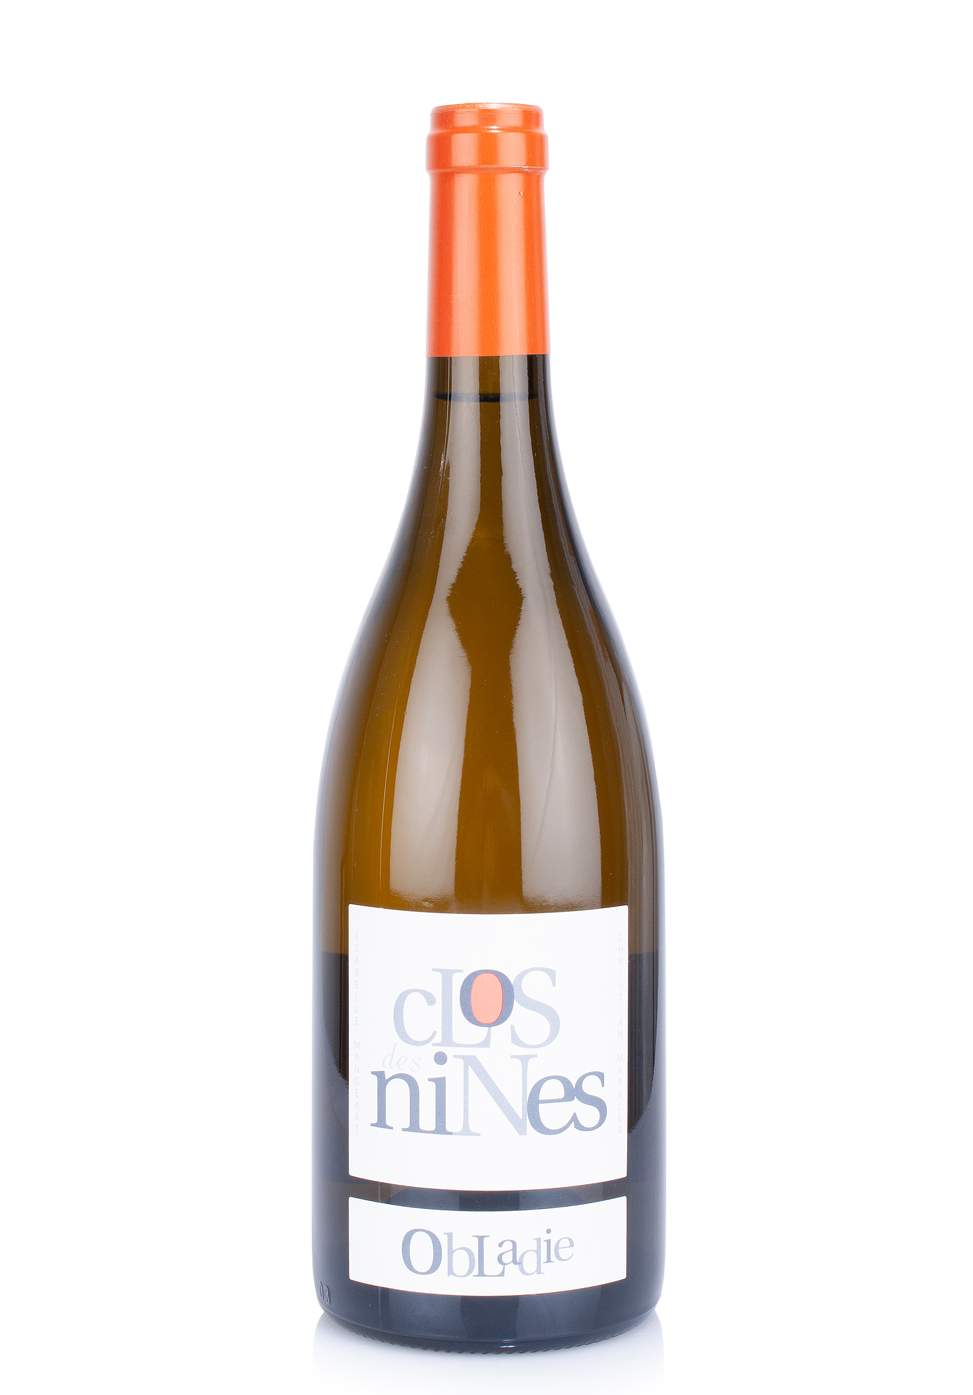 Vin Clos des Nines Obladie, Coteaux du Languedoc 2017 (0.75L)